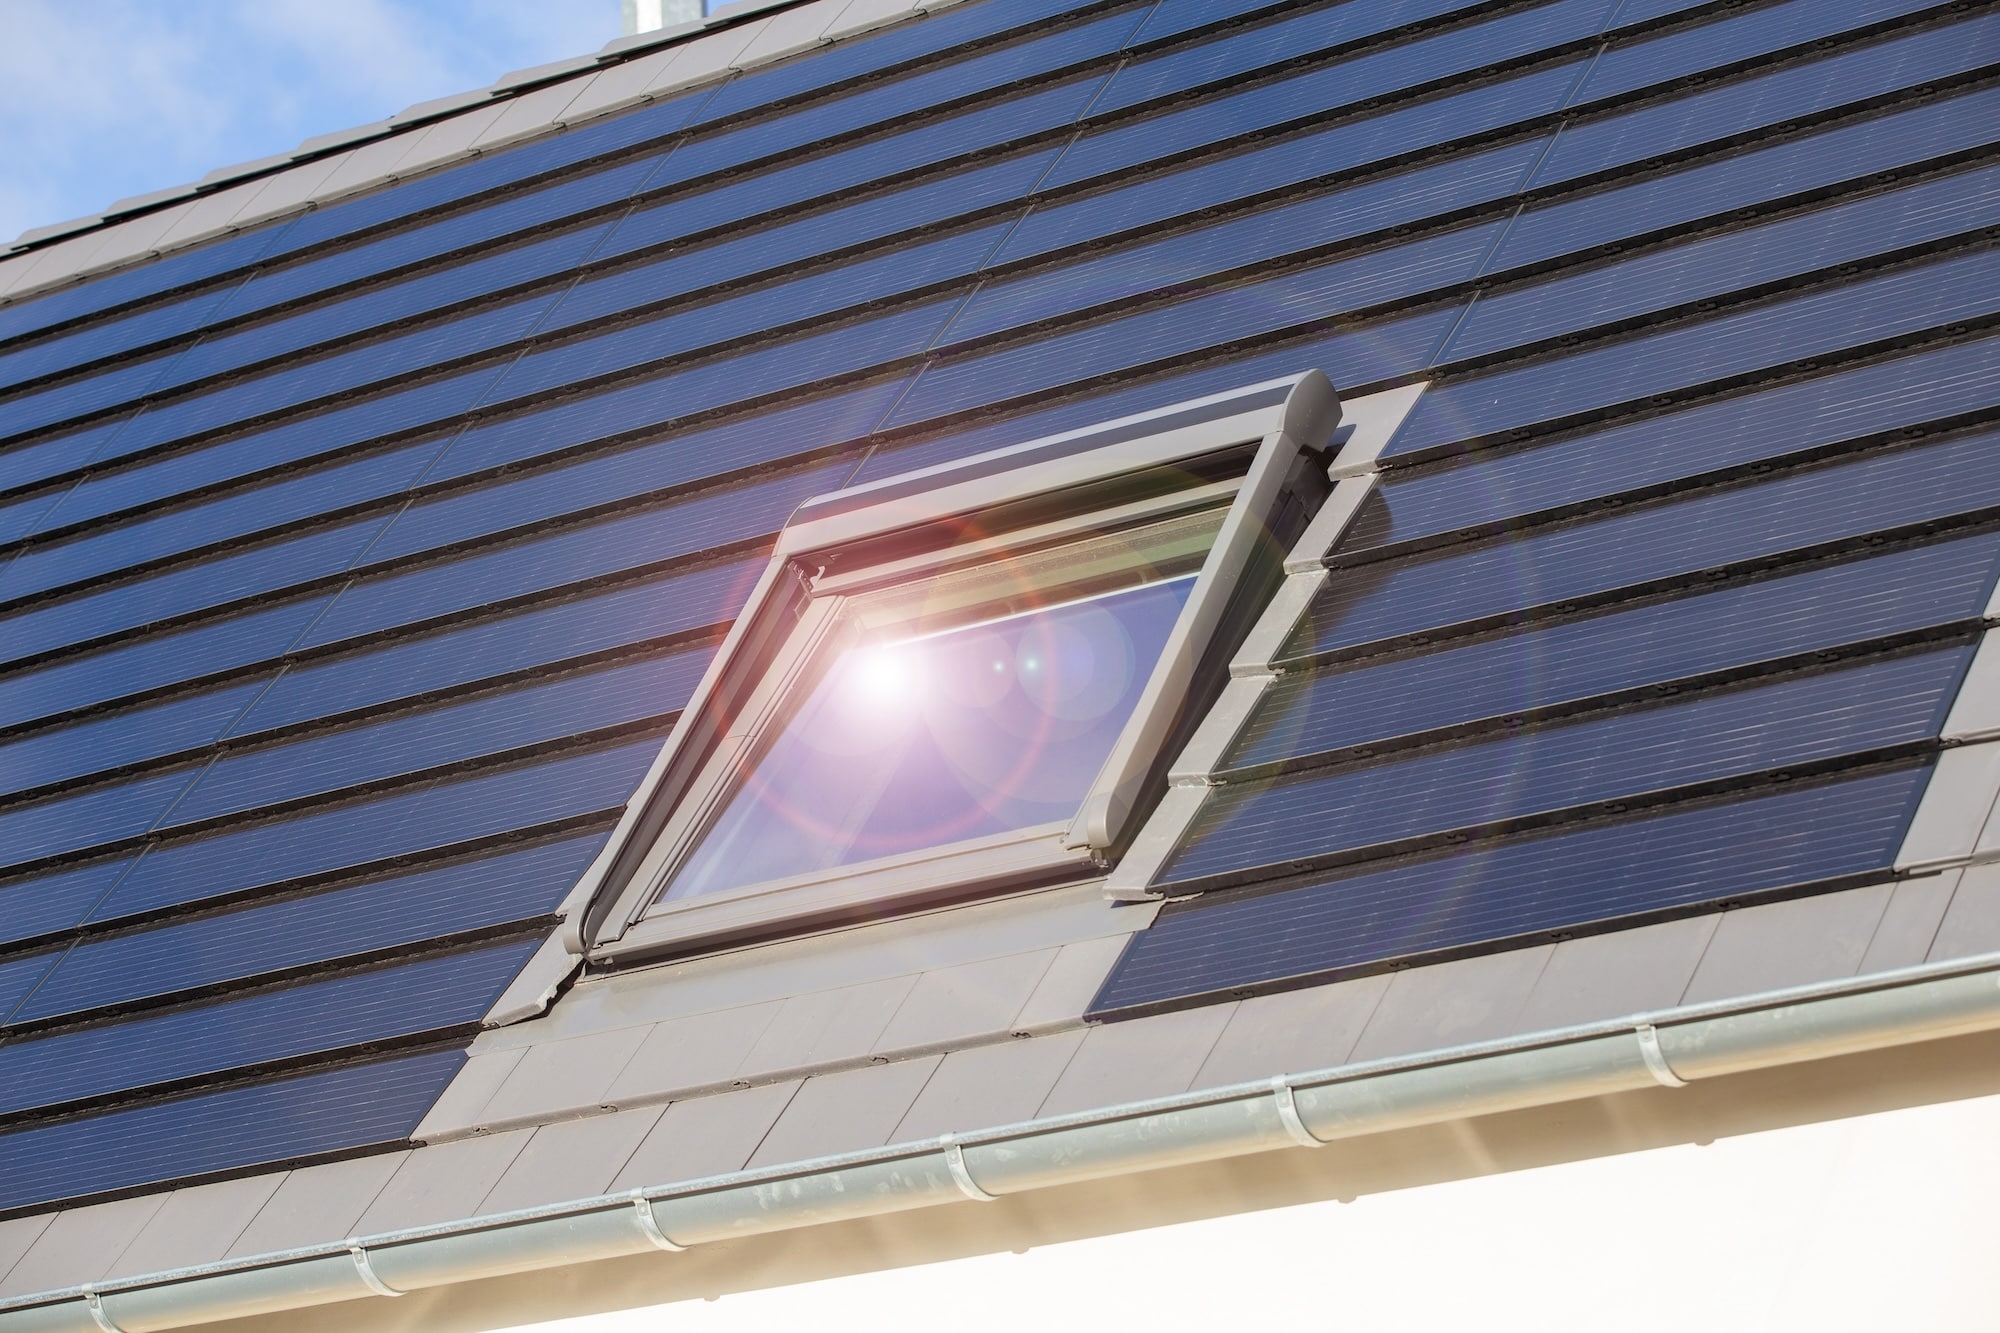 Dachfenster an einem Einfamilienhaus mit Solardachziegeln.